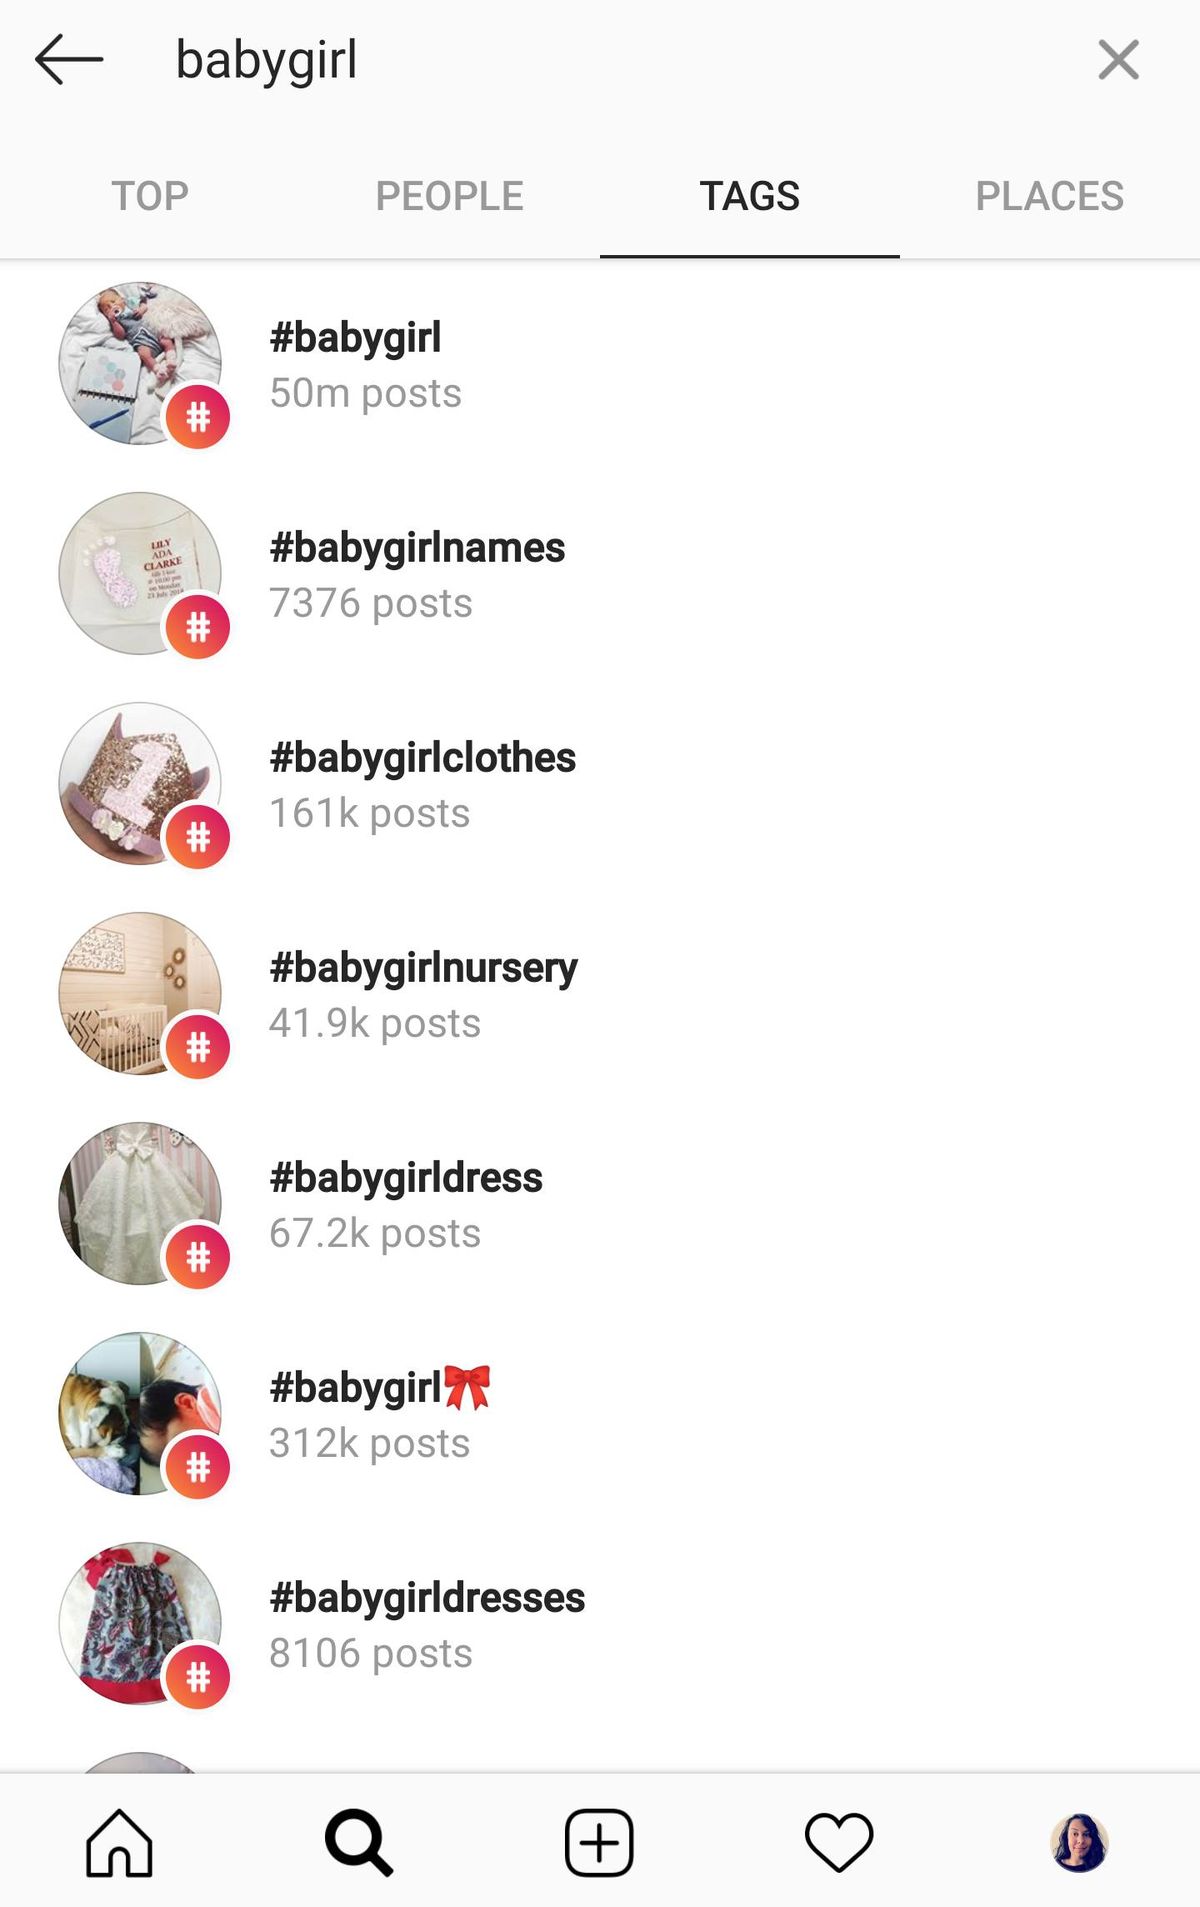 etiquetes de cerca a instagram nena